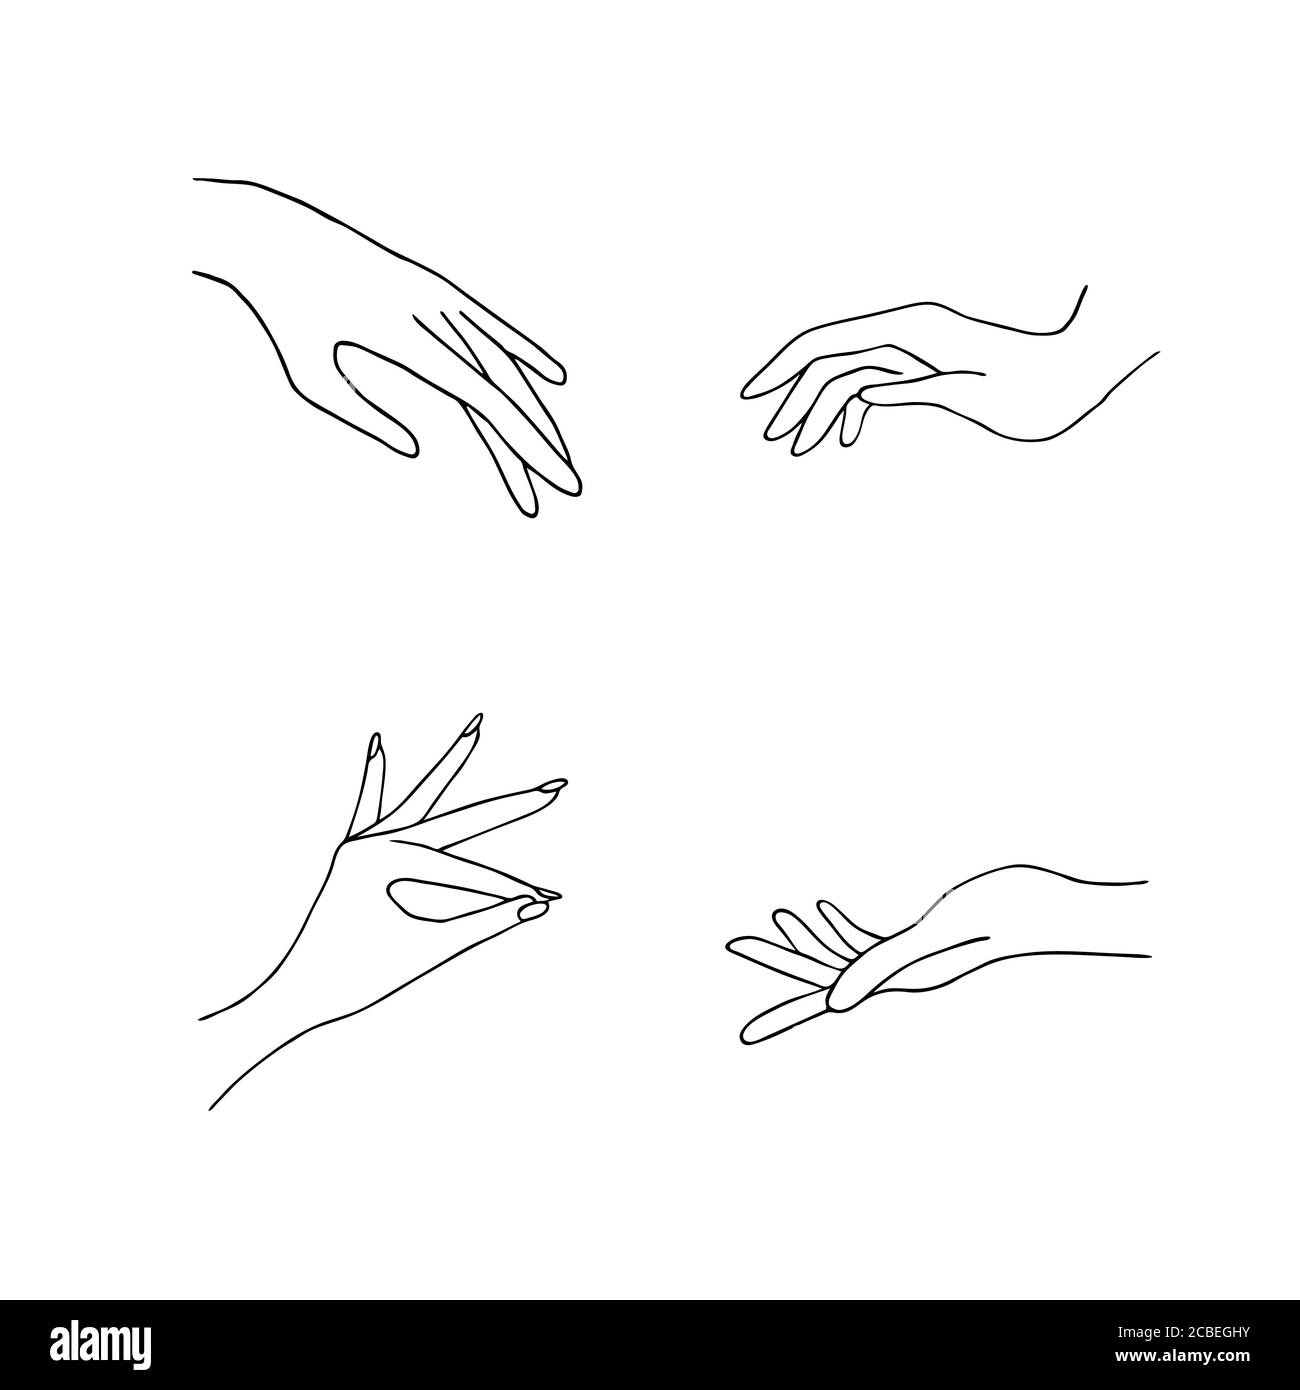 Icônes de main pour femmes. Des mains féminines élégantes de gestes différents. Lineart dans un style tendance minimaliste. Illustration vectorielle. EPS10. Illustration de Vecteur